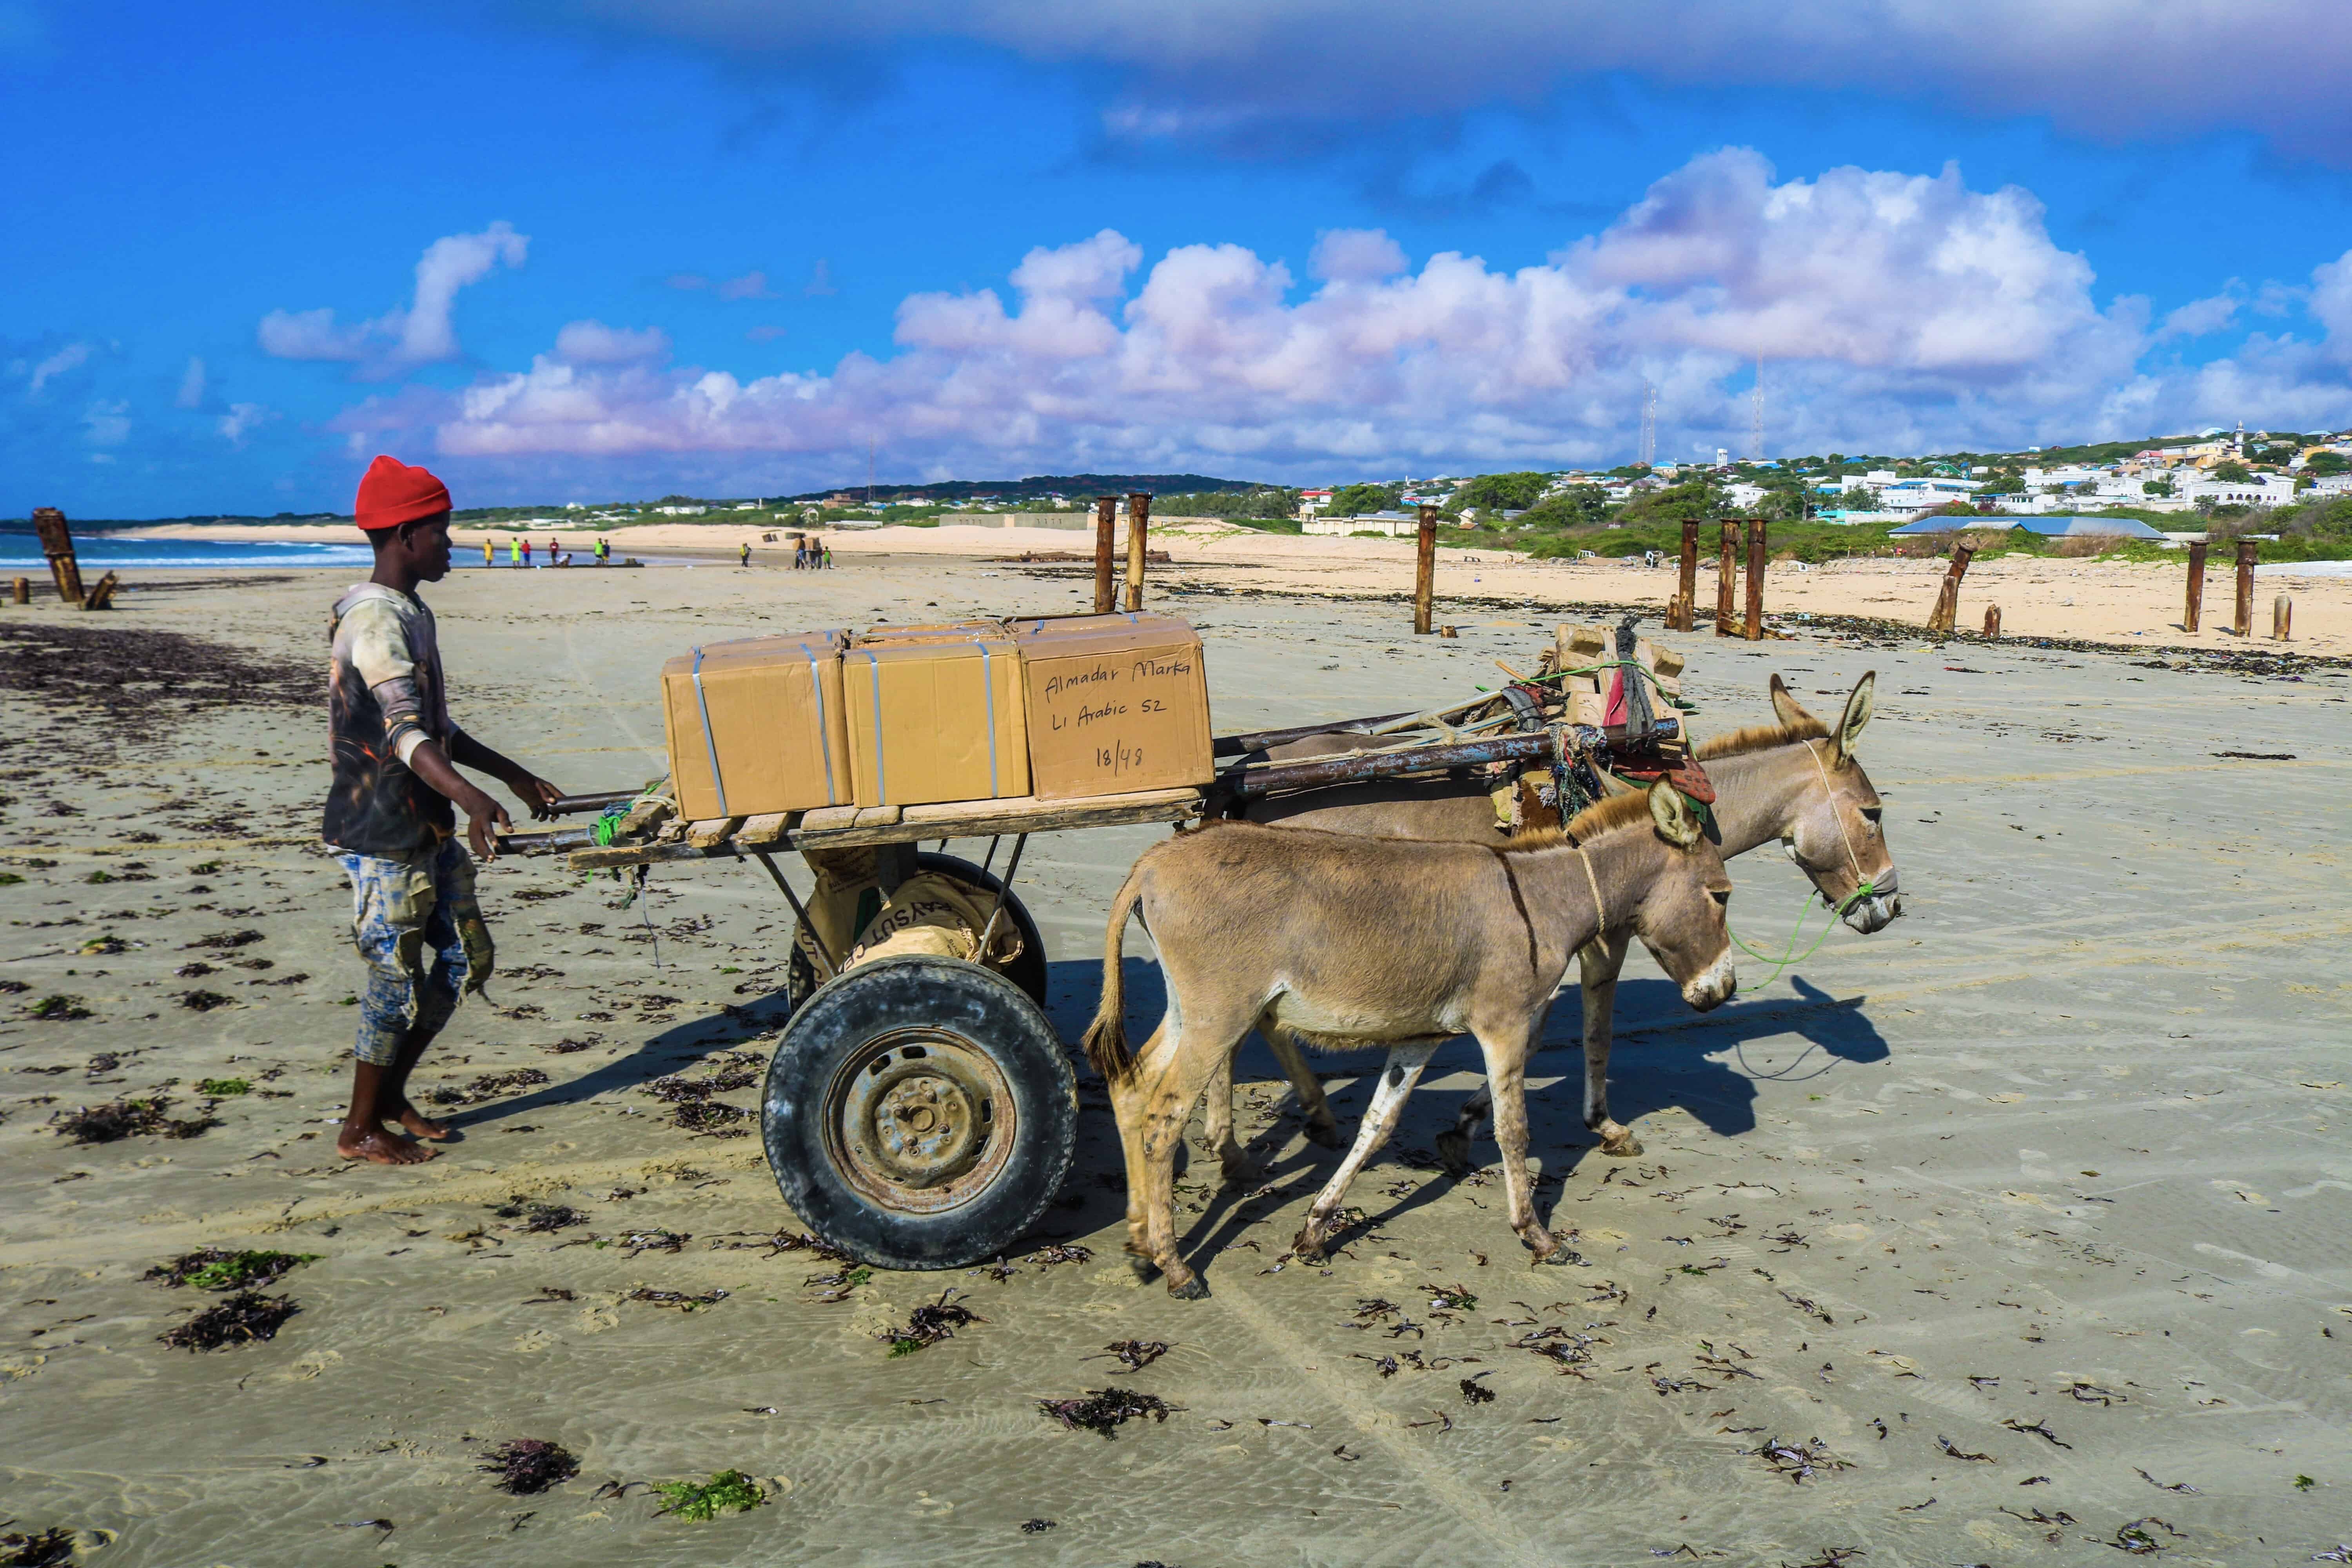 Books being transported on donkeycarts in Marka, Somalia